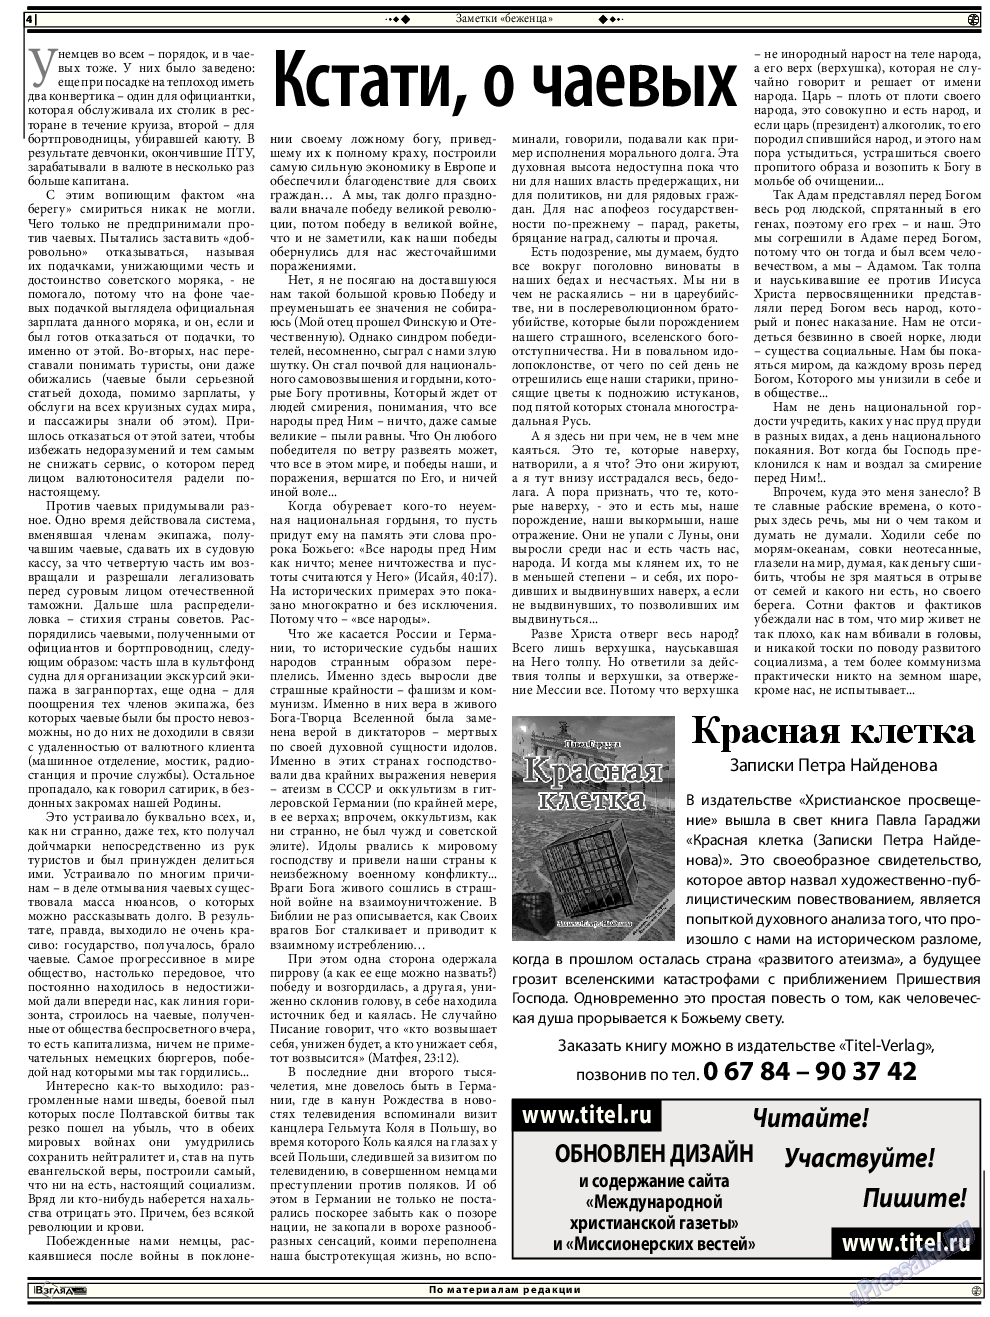 Христианская газета (газета). 2014 год, номер 9, стр. 18